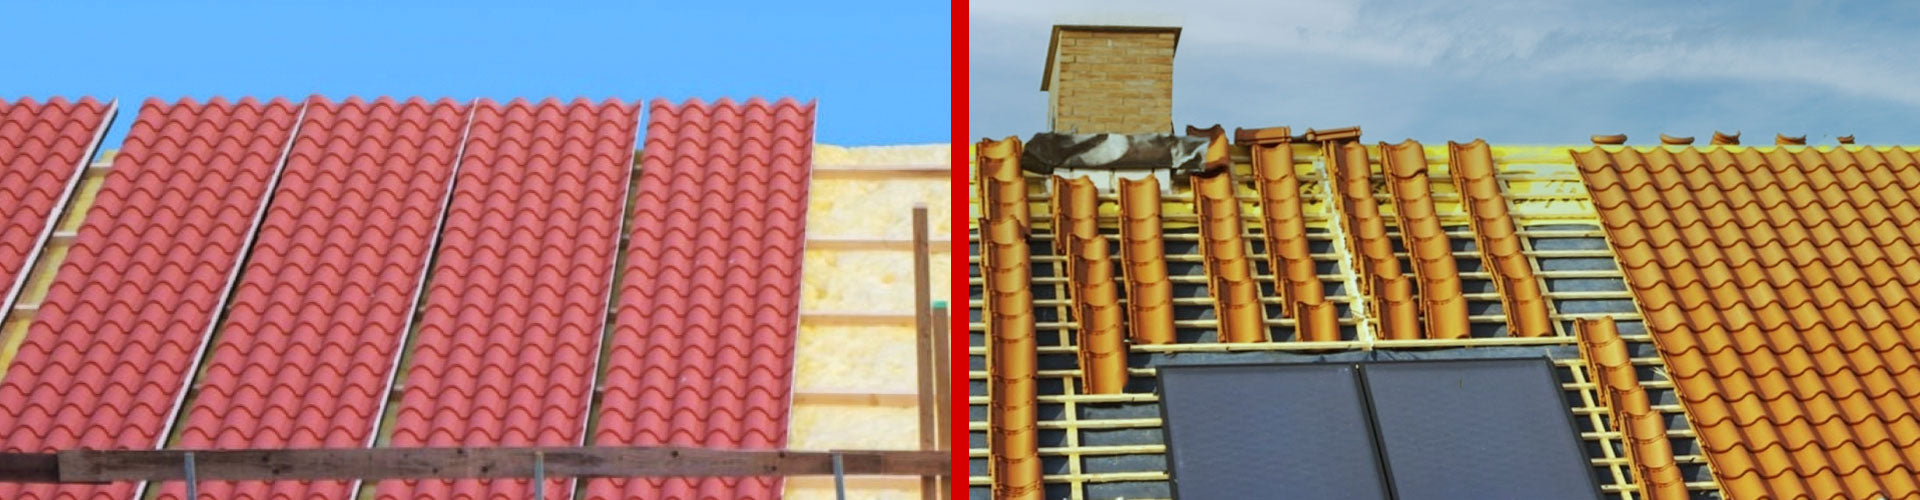 5 Razones para elegir el panel teja para cubiertas - Paneles ACH